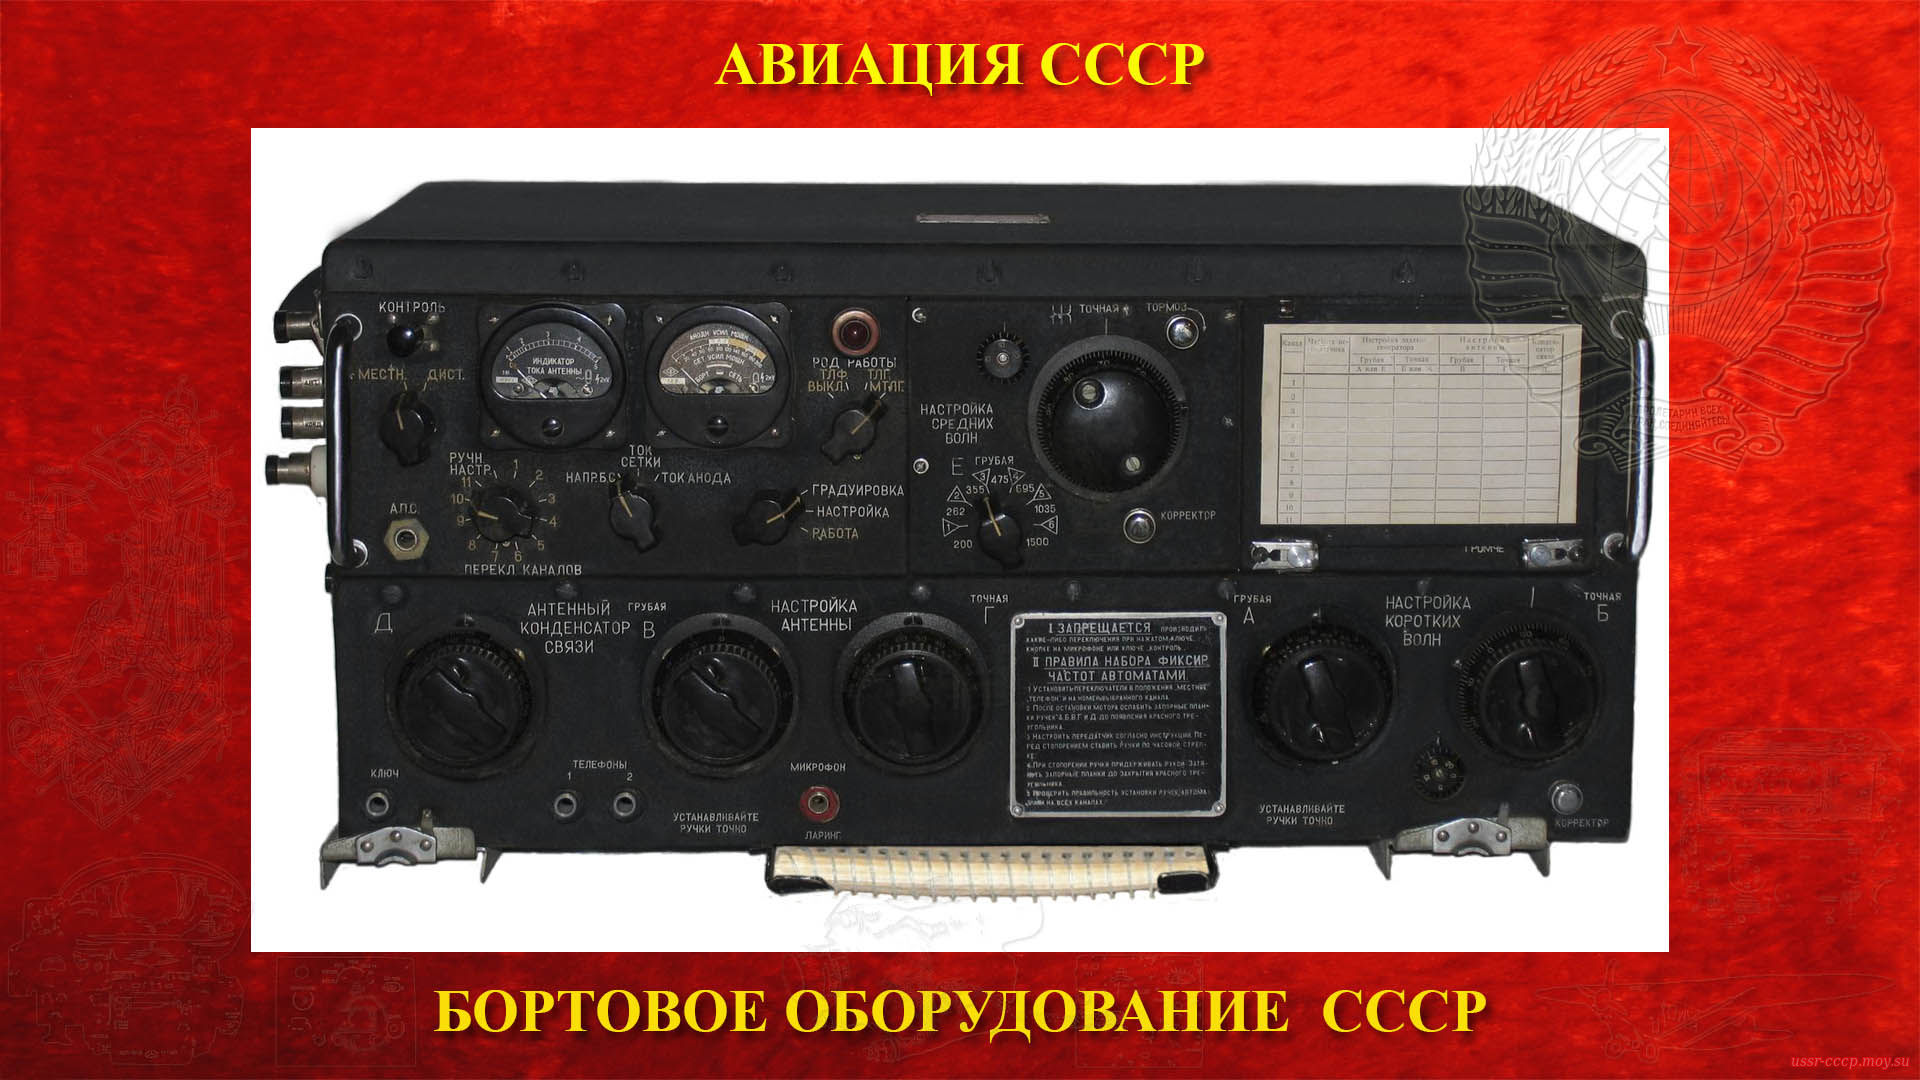 Р-807 (РСБ-70 — Беркут — Дунай) — Радиопередатчик СВ-КВ диапазонов